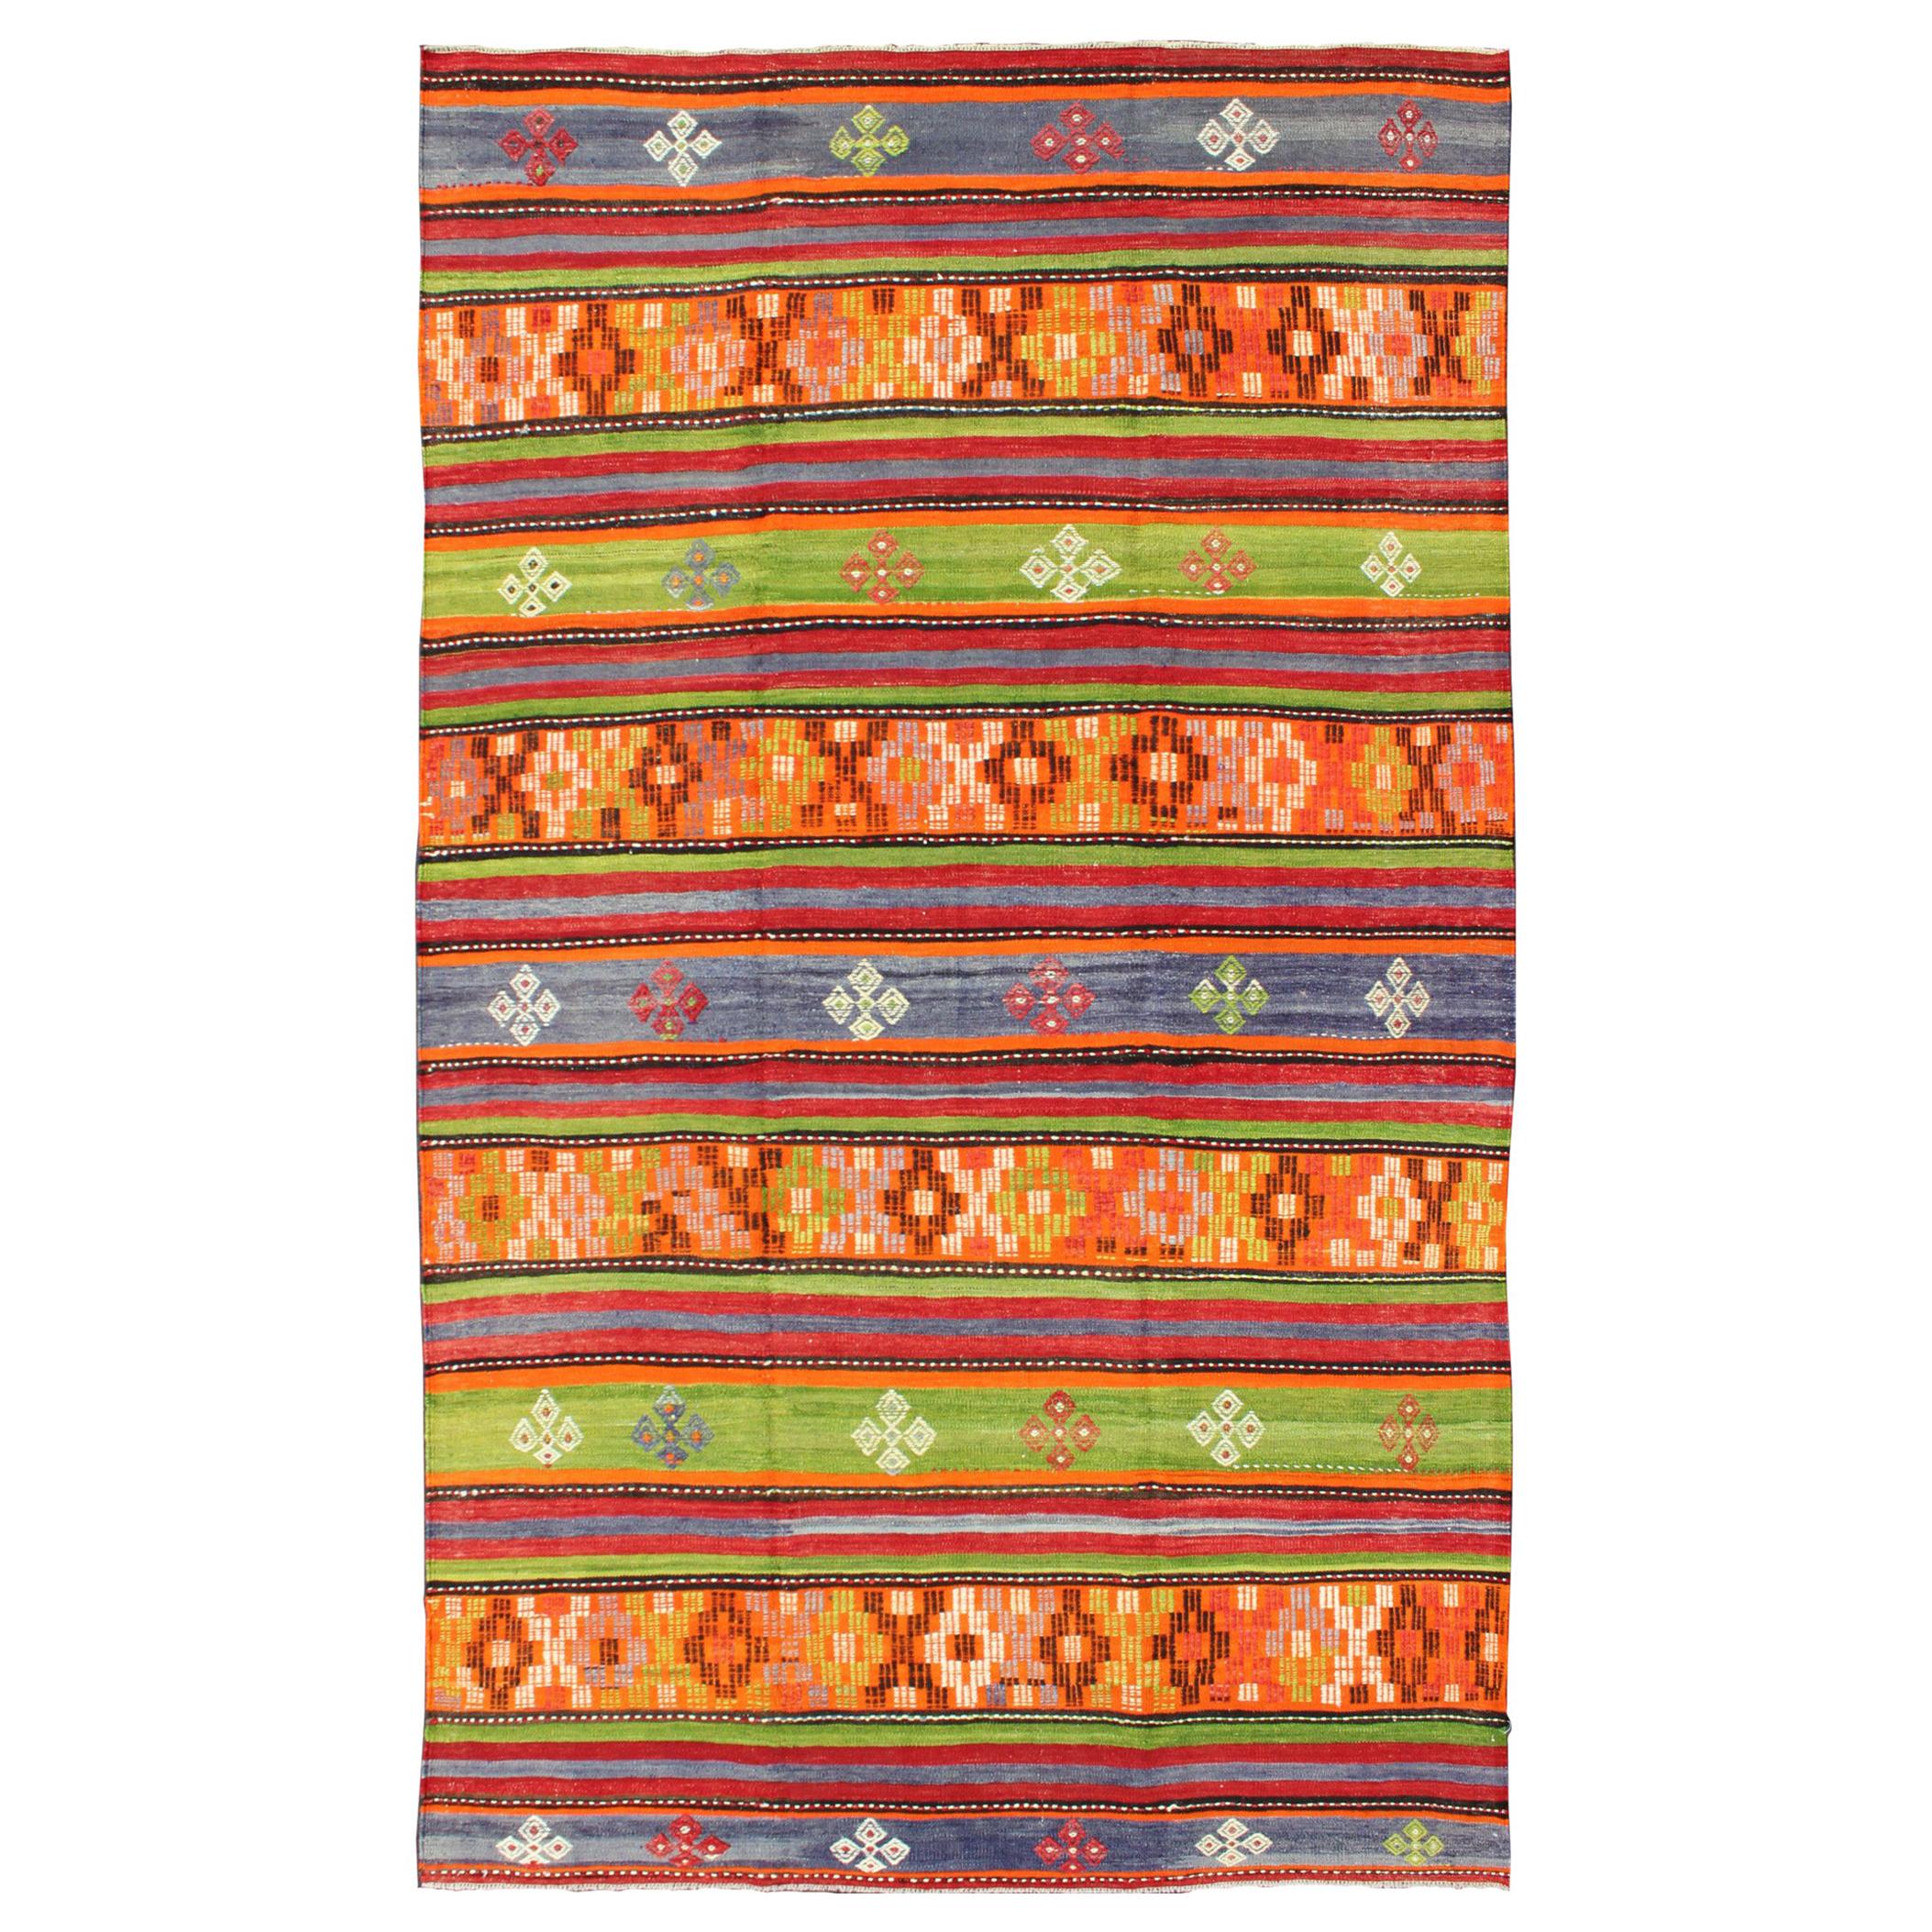  Tapis Kilim turc coloré et éclatant avec motif géométrique à rayures